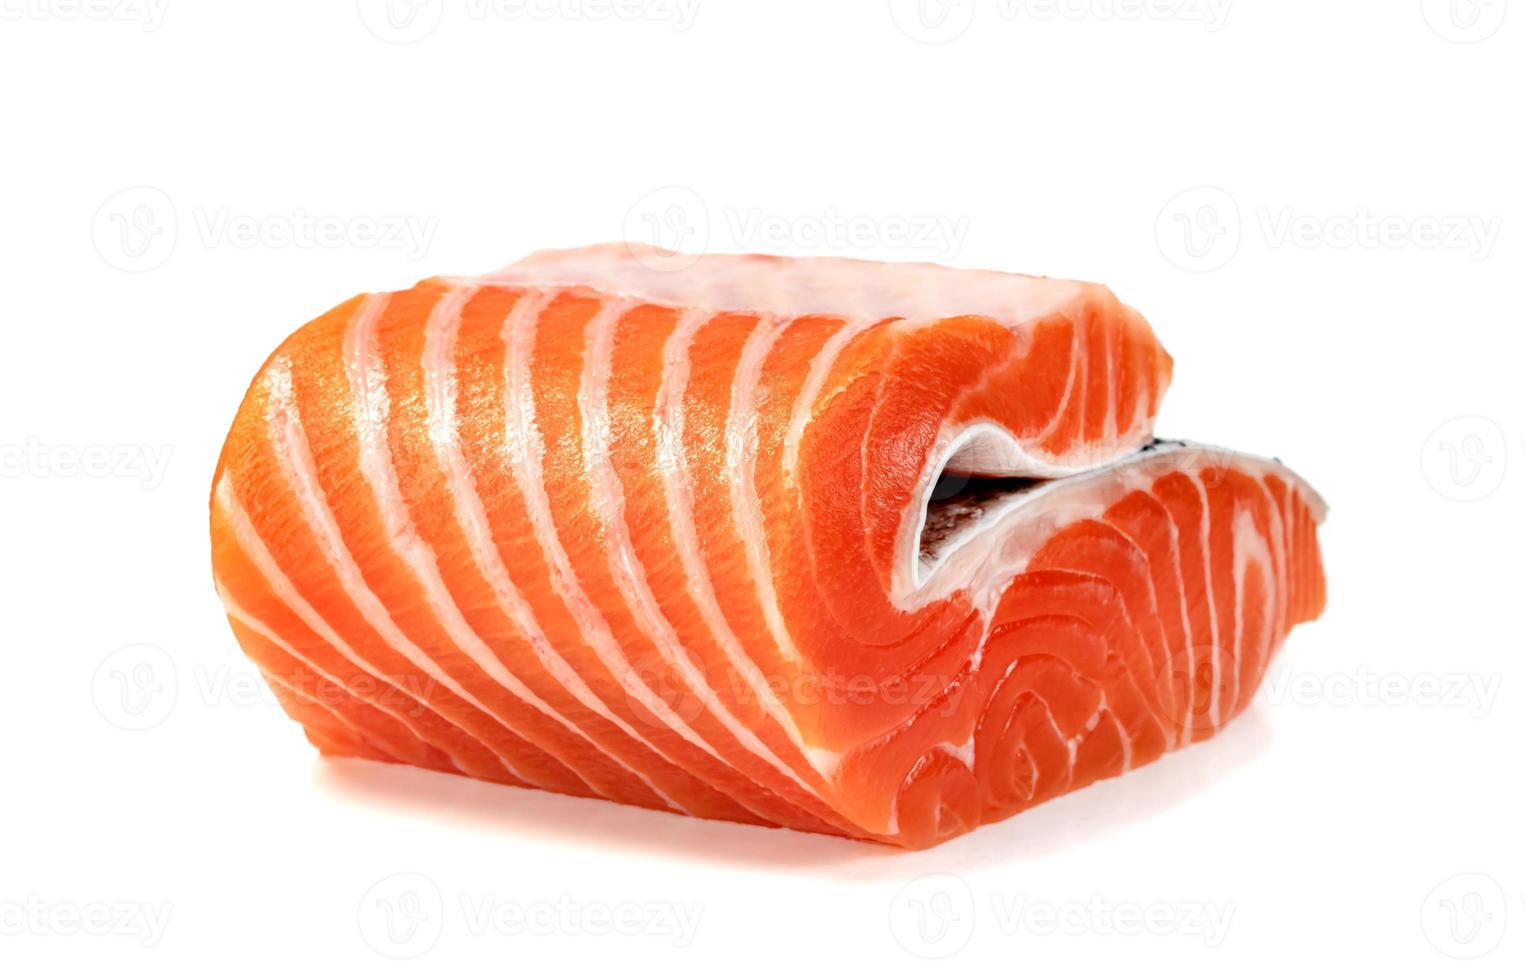 pedaço de filé de salmão fresco fatiado isolado no fundo branco foto